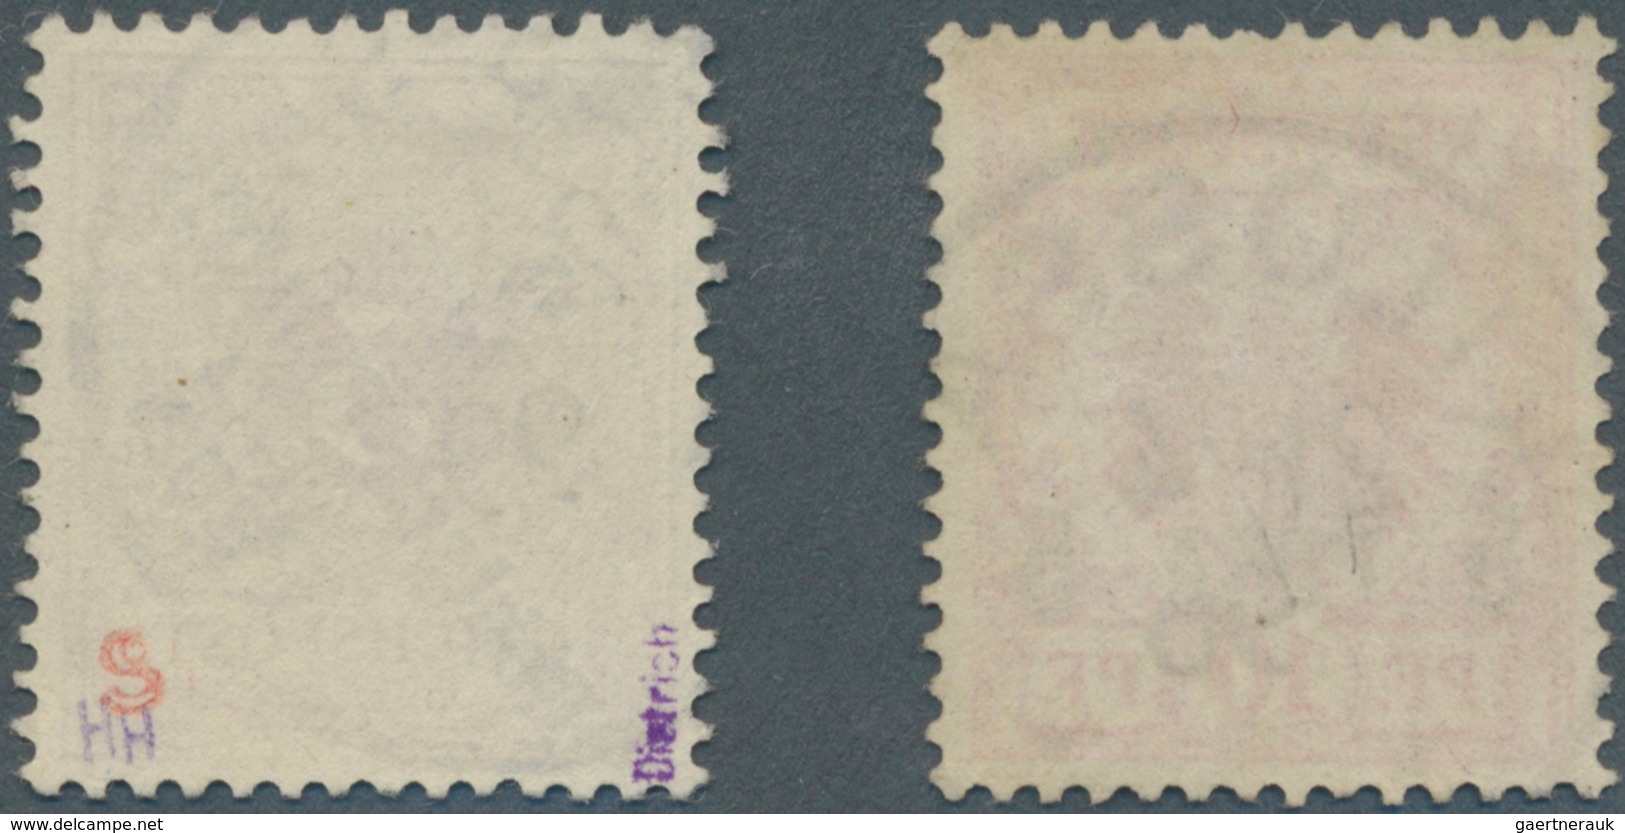 18583 Deutsch-Ostafrika: 1895/1898, Freimarken Mit Aufdruck, 5 P Auf 10 Pf Rotkarmin Mit Klarer Entwertung - German East Africa